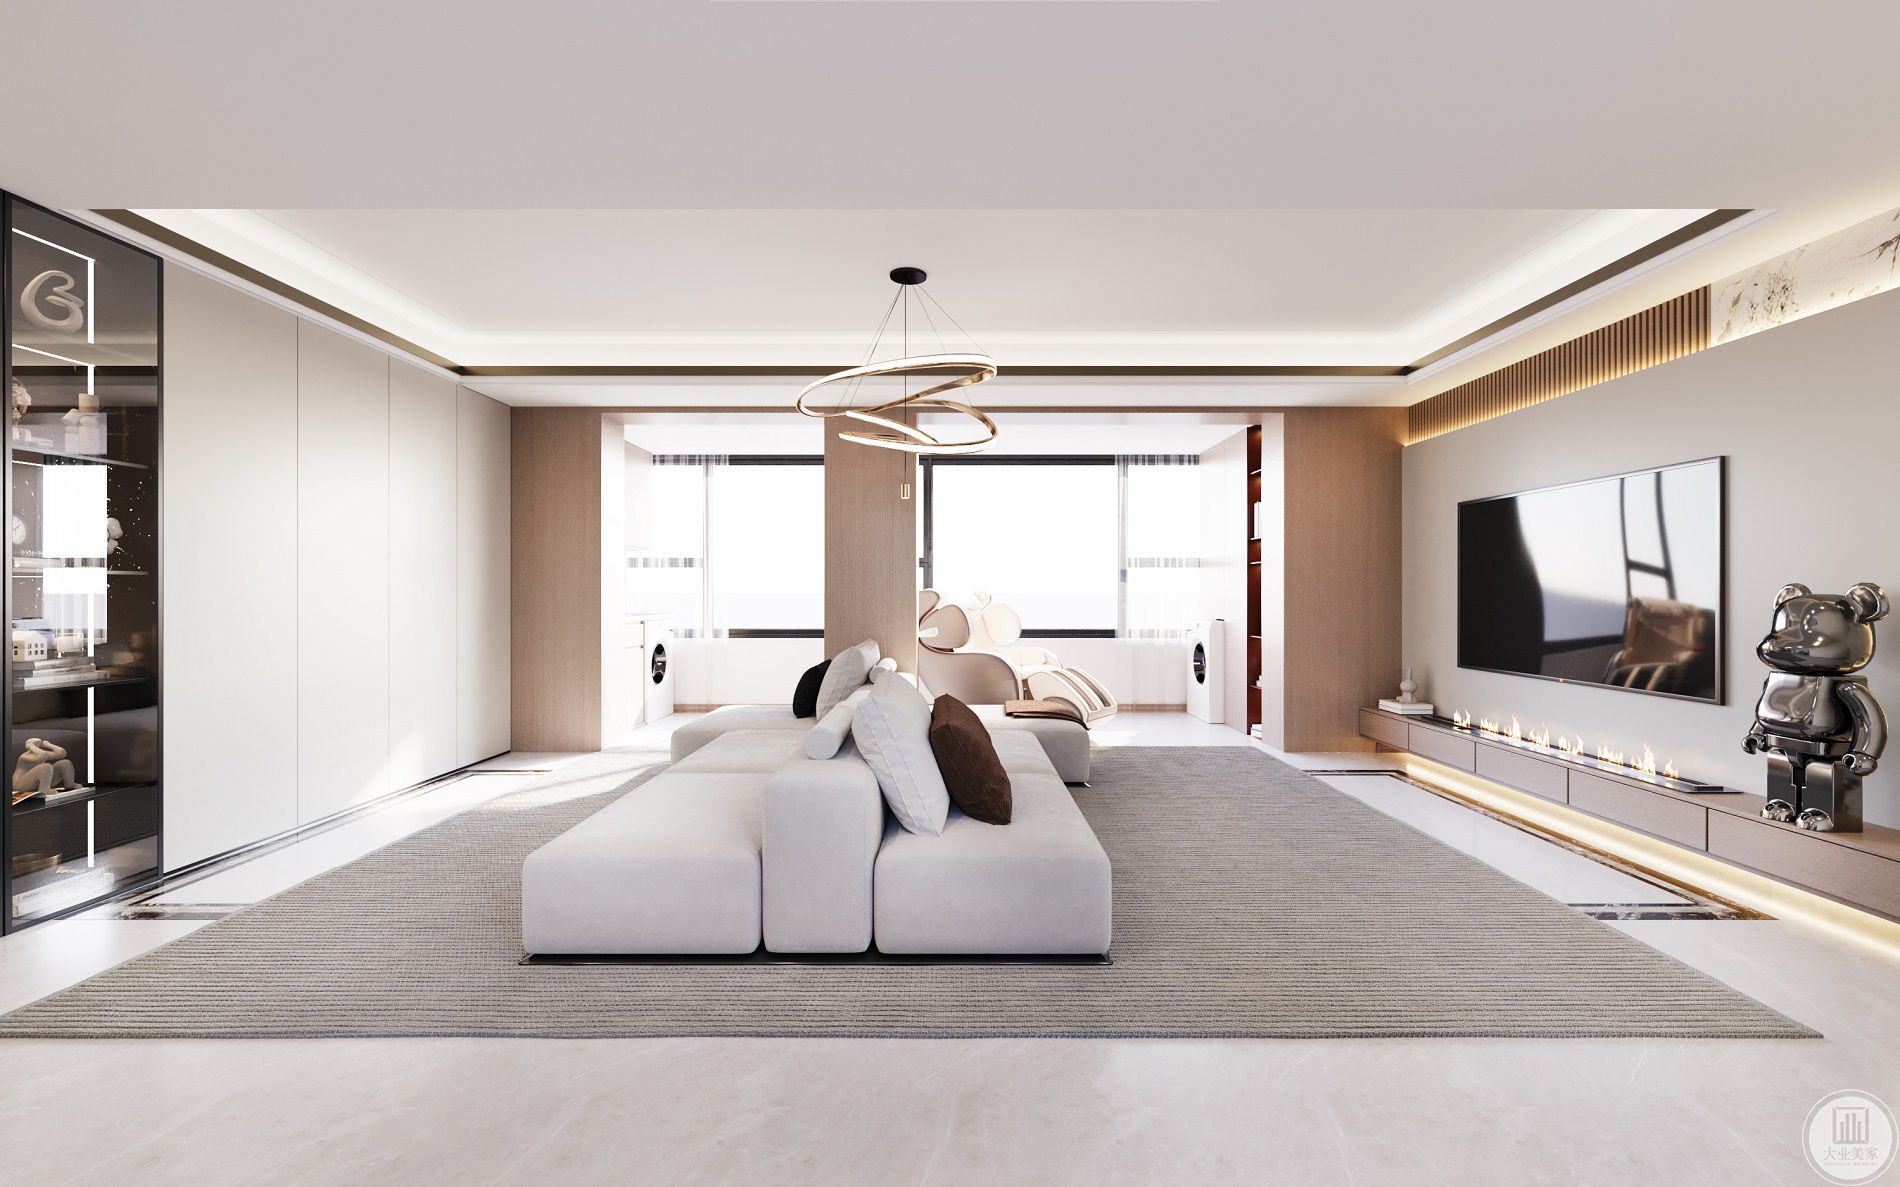 客厅开间比较大设计背靠背沙发满足双向功能